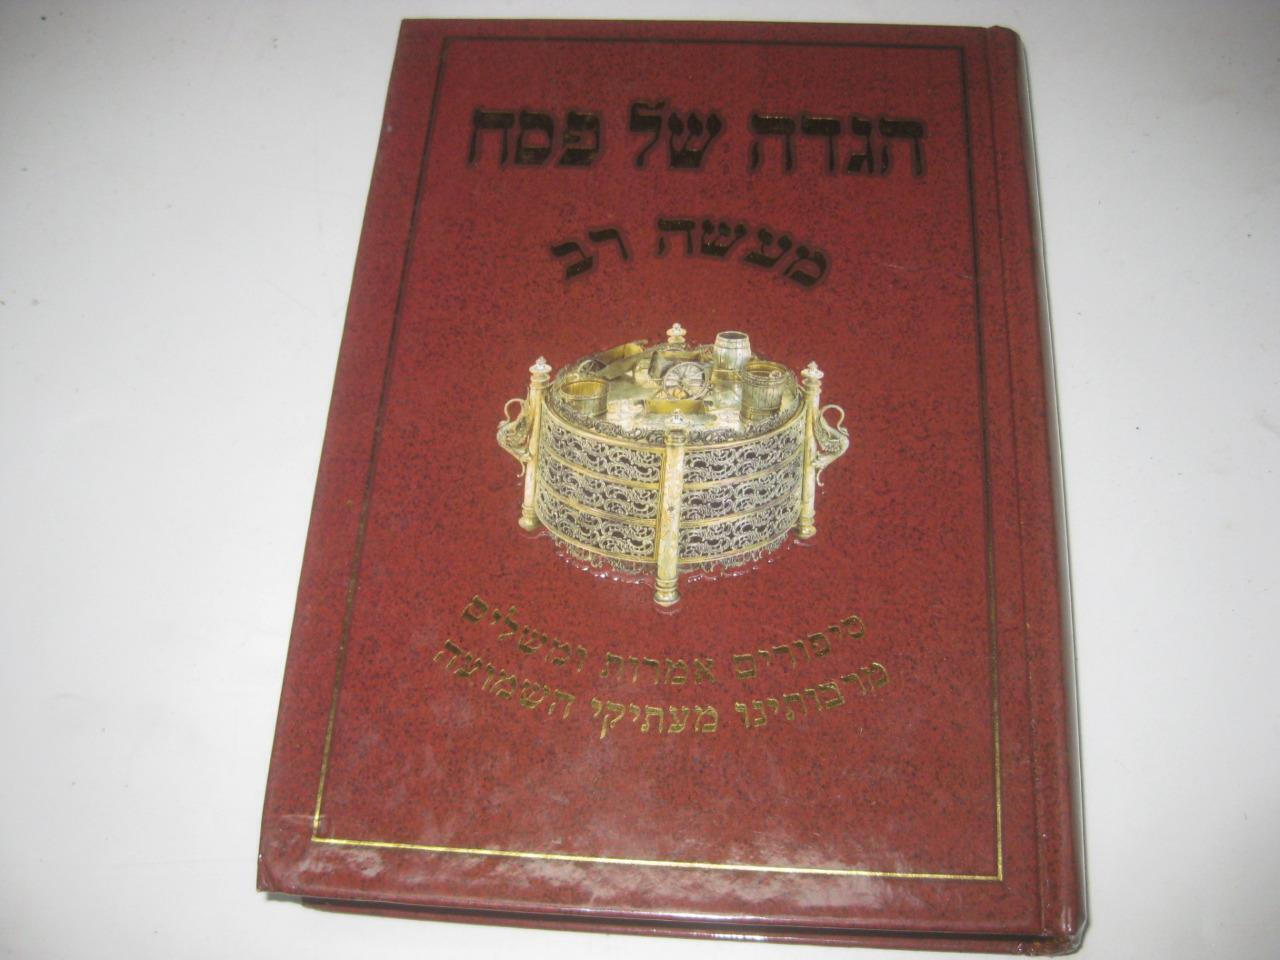 הגדה של פסח - מעשה רב Haggadah Shel Pesach - Maaseh Rav by R. Shalom Vallach